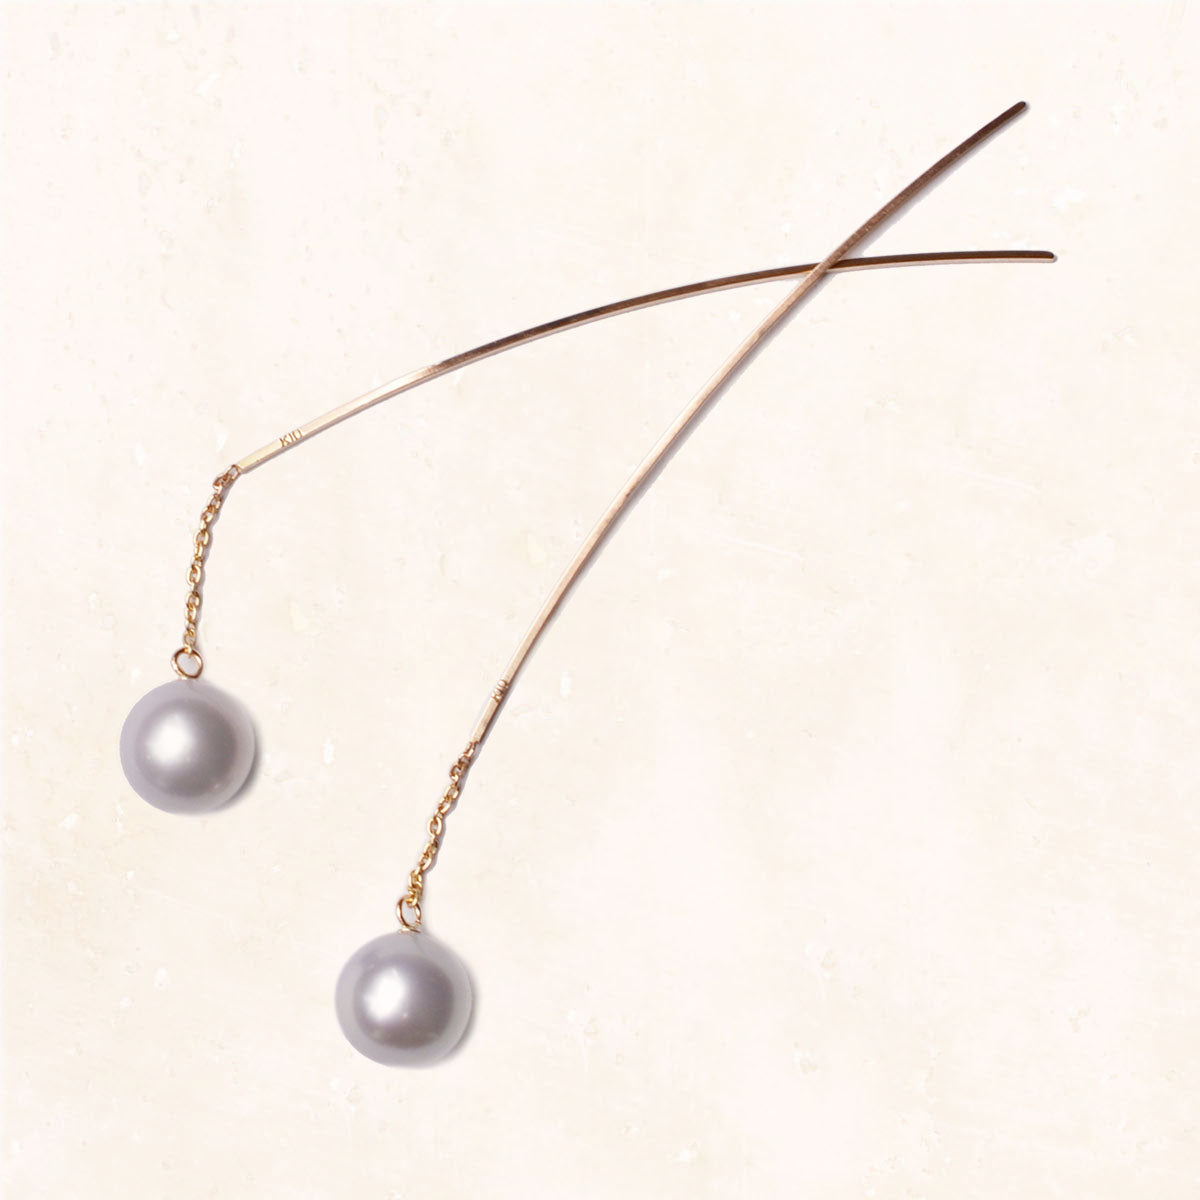 10K Gold Sleek Gray Pearl Earrings